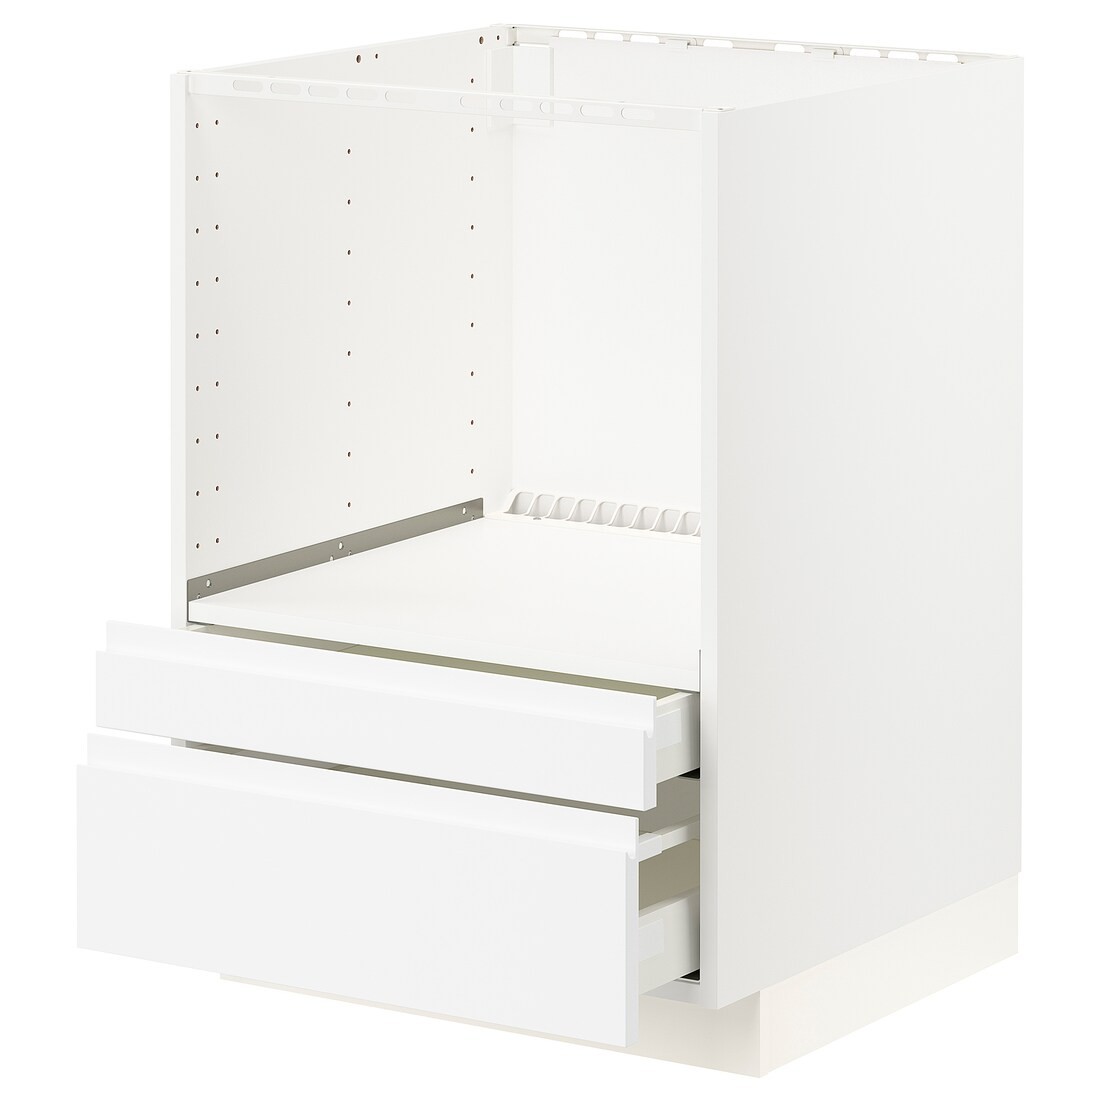 IKEA METOD МЕТОД / MAXIMERA МАКСИМЕРА Напольный шкаф для комби СВЧ / выдвижные ящики, белый / Voxtorp матовый белый, 60x60 см 69112788 | 691.127.88